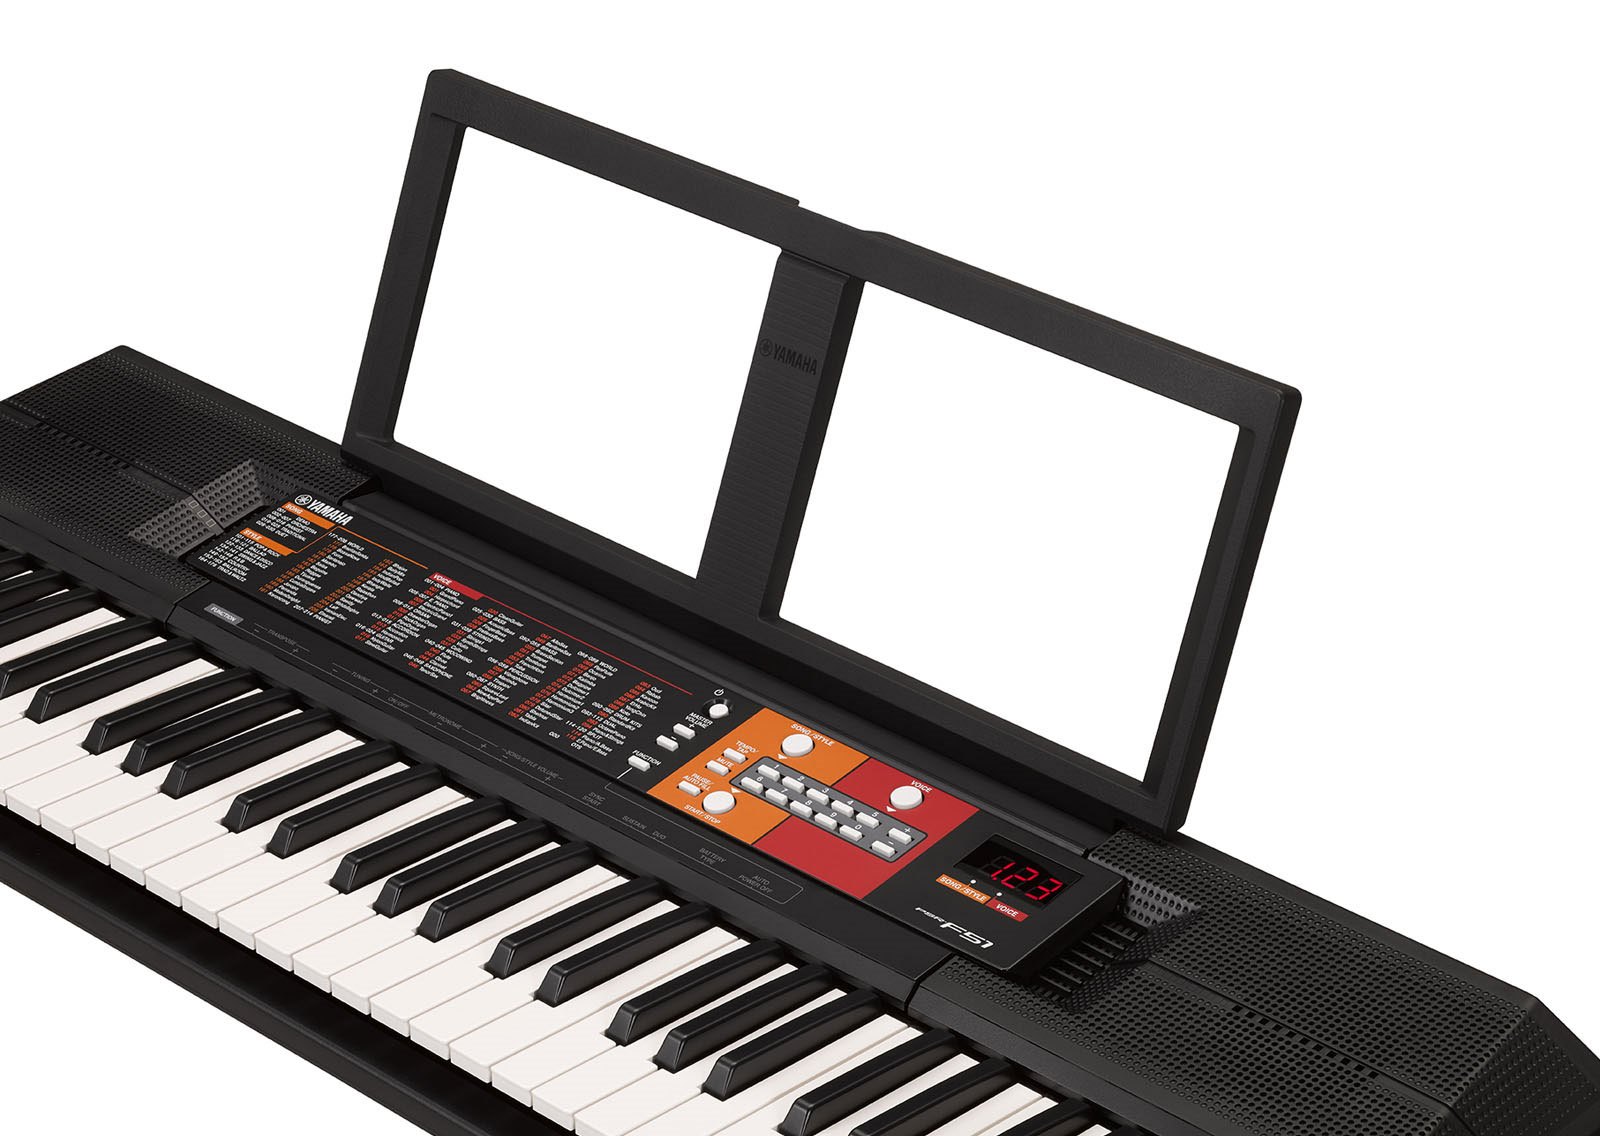 Trọn Bộ Đàn Organ Yamaha PSR - F51 - Keyboard PSR- F51 chính hãng kèm Chân , Bao, Nguồn, Giá Sách - Tặng Kèn Kazoo đồng thanh cao cấp TONY